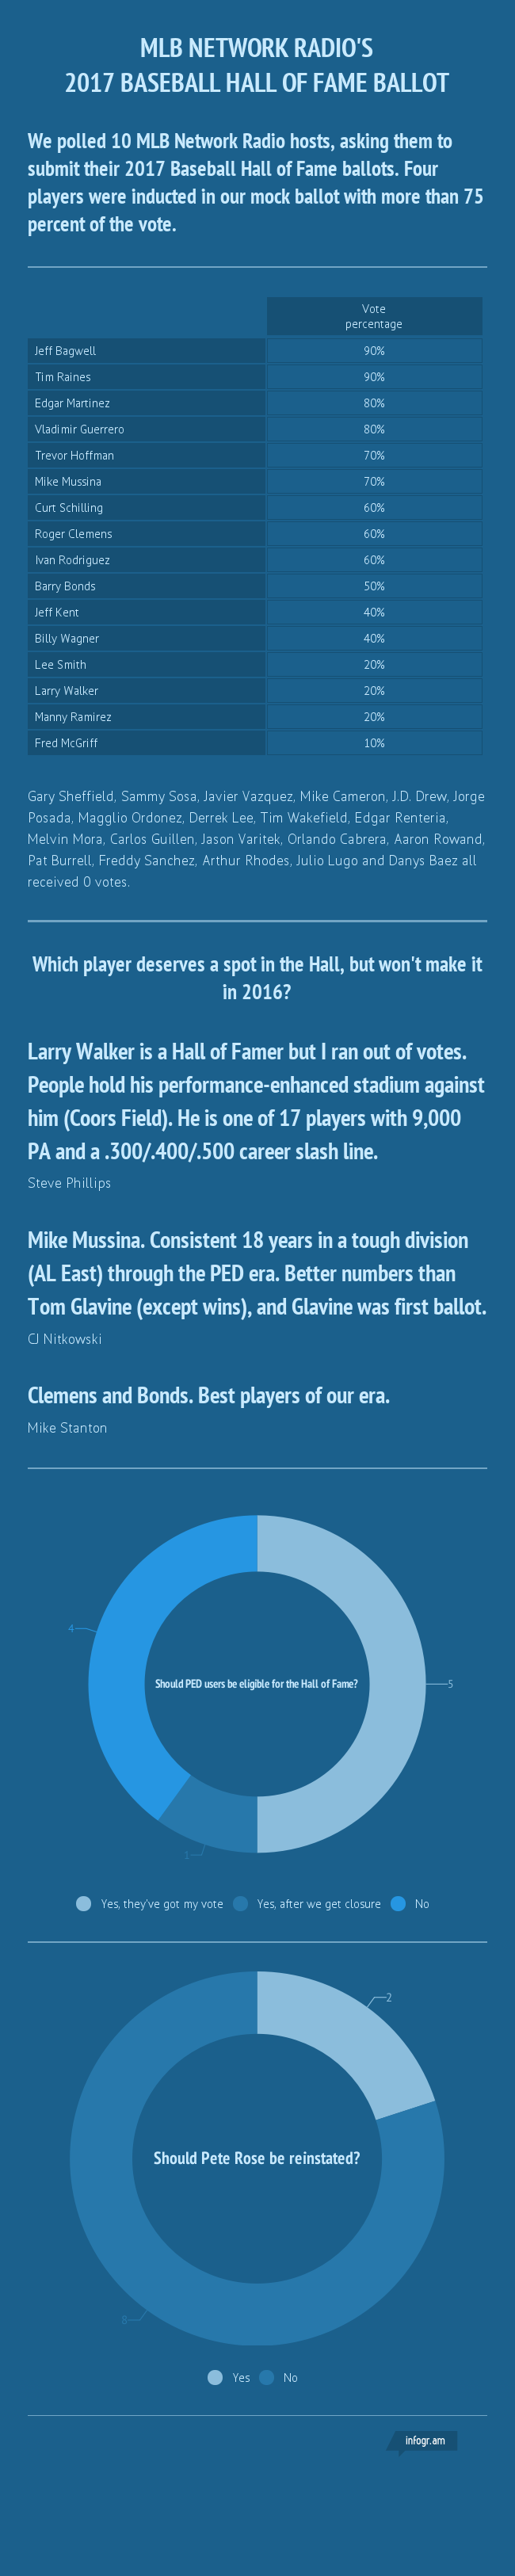 MLB_Network_Radio_2017_Hall_of_Fame_ballot